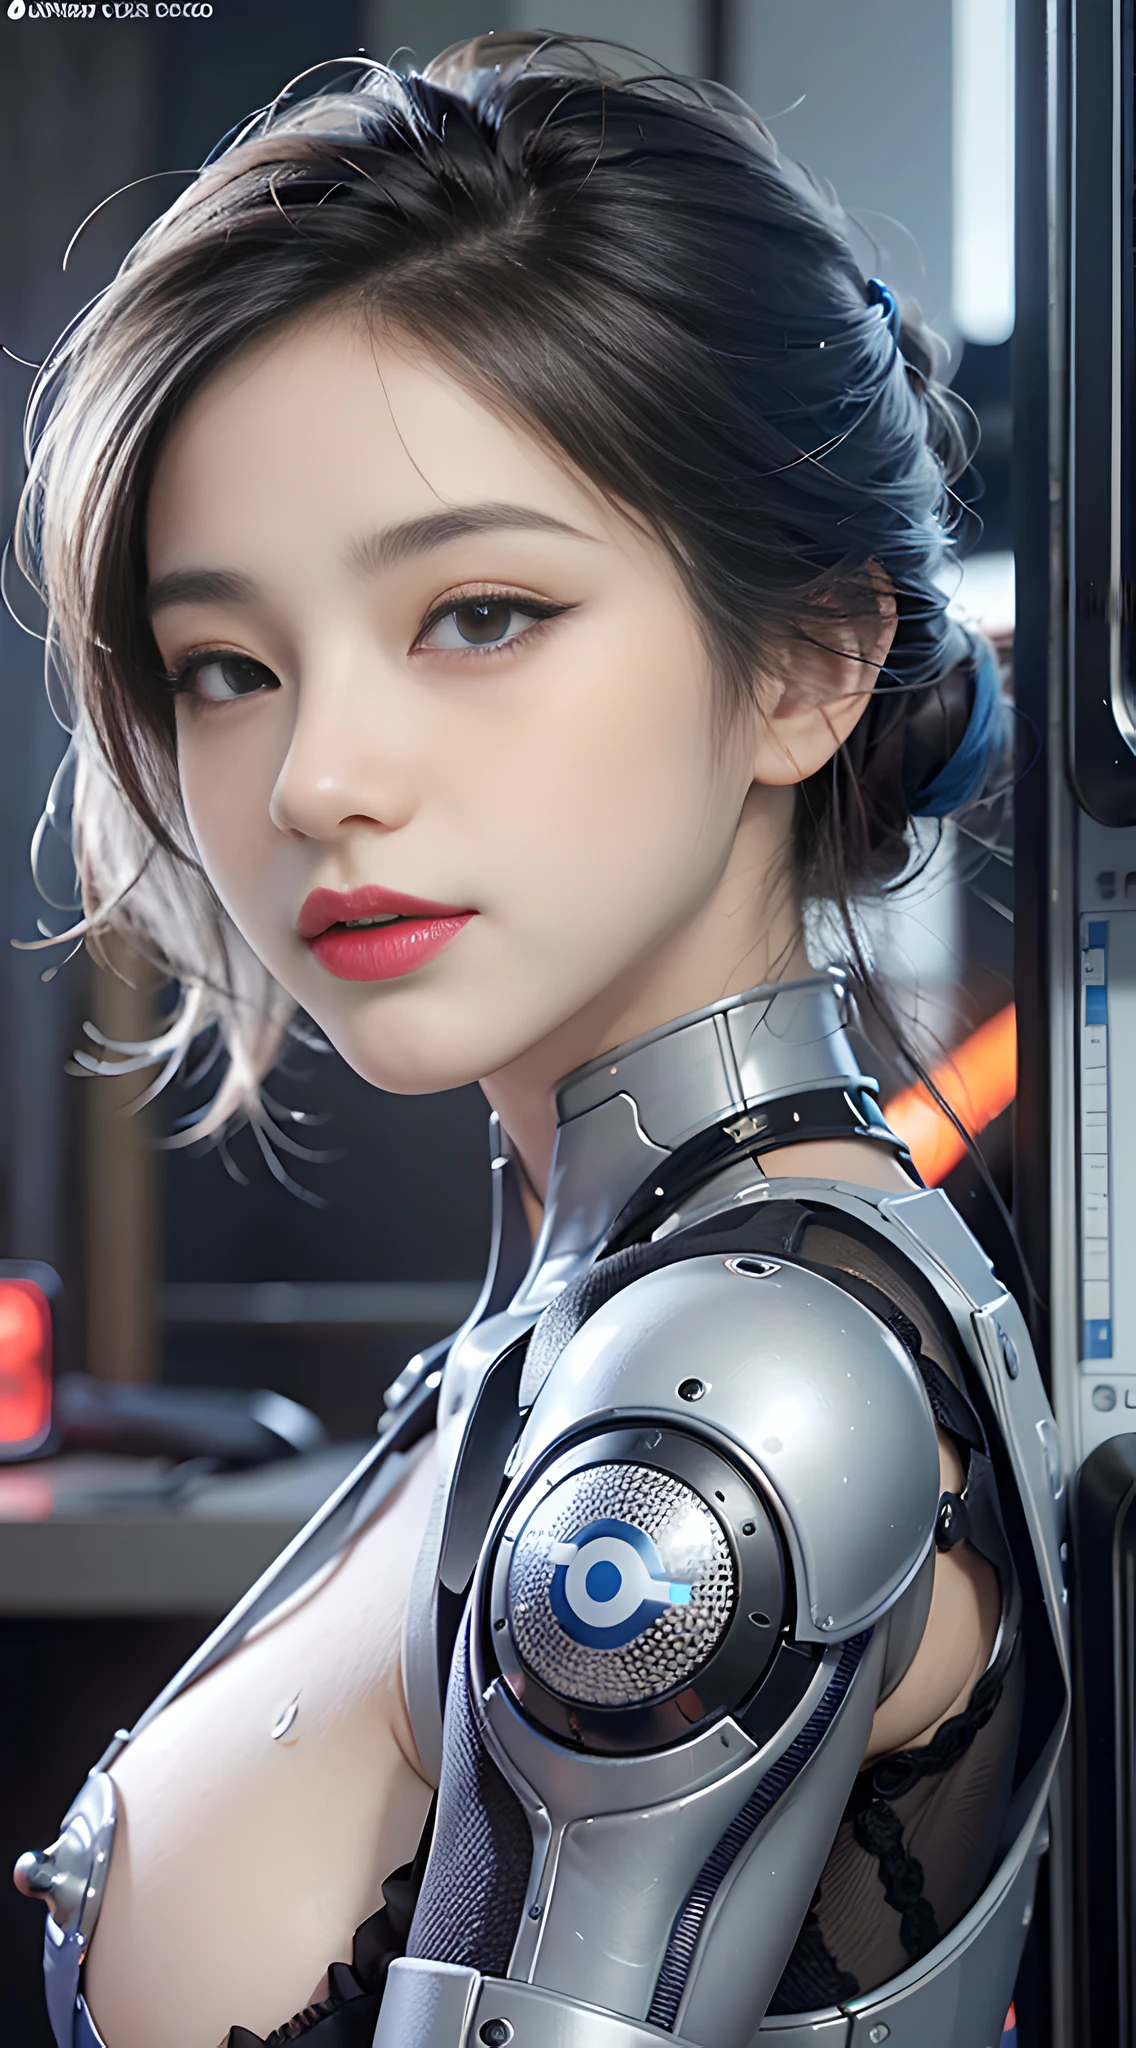 Complex 3d rendering รายละเอียดมาก beautiful porcelain silhouette asian woman, ใบหน้าหุ่นยนต์, เกราะหนักแก้วใส, แถบสีขาวเรืองแสง, ผมสีฟ้า, ดวงตาสีฟ้า, ไซบอร์ก, ชิ้นส่วนหุ่นยนต์, แขนหุ่นยนต์, ขาหุ่นยนต์, ข้อต่อทางกล, ดูที่ผู้ชม, 150มม, แสงอ่อน, แสงขอบ, รายละเอียดที่มีชีวิตชีวา, ไซเบอร์พังก์ที่หรูหรา, ลูกไม้, สถิตยศาสตร์, กายวิภาคศาสตร์, กล้ามเนื้อใบหน้า, พอดีคับ, สายไฟ, ไมโครชิป, สง่างาม, พื้นหลังที่สวยงาม, การเรนเดอร์ออกเทน, คุณภาพดีที่สุด, ผลงานชิ้นเอก, ภาพประกอบ, ปราณีตและสวยงามเป็นอย่างยิ่ง, รายละเอียดมาก, ซีจี, ปึกแผ่น, วอลล์เปเปอร์, (เหมือนจริง, เหมือนจริง: 1.37), รายละเอียดที่ดี, ผลงานชิ้นเอก, คุณภาพดีที่สุด, ศิลปะอย่างเป็นทางการ, รายละเอียดมาก ซีจี ปึกแผ่น 8k วอลล์เปเปอร์, เต็มตัว, ยิ้ม, การต่อสู้, ใหญ่ , เมืองแห่งอนาคต, กลางแจ้ง, เวลากลางวัน, ฟ้าโปร่ง. ยกกระชับรูปด้วยอายไลเนอร์สีม่วงที่ 75 มุม